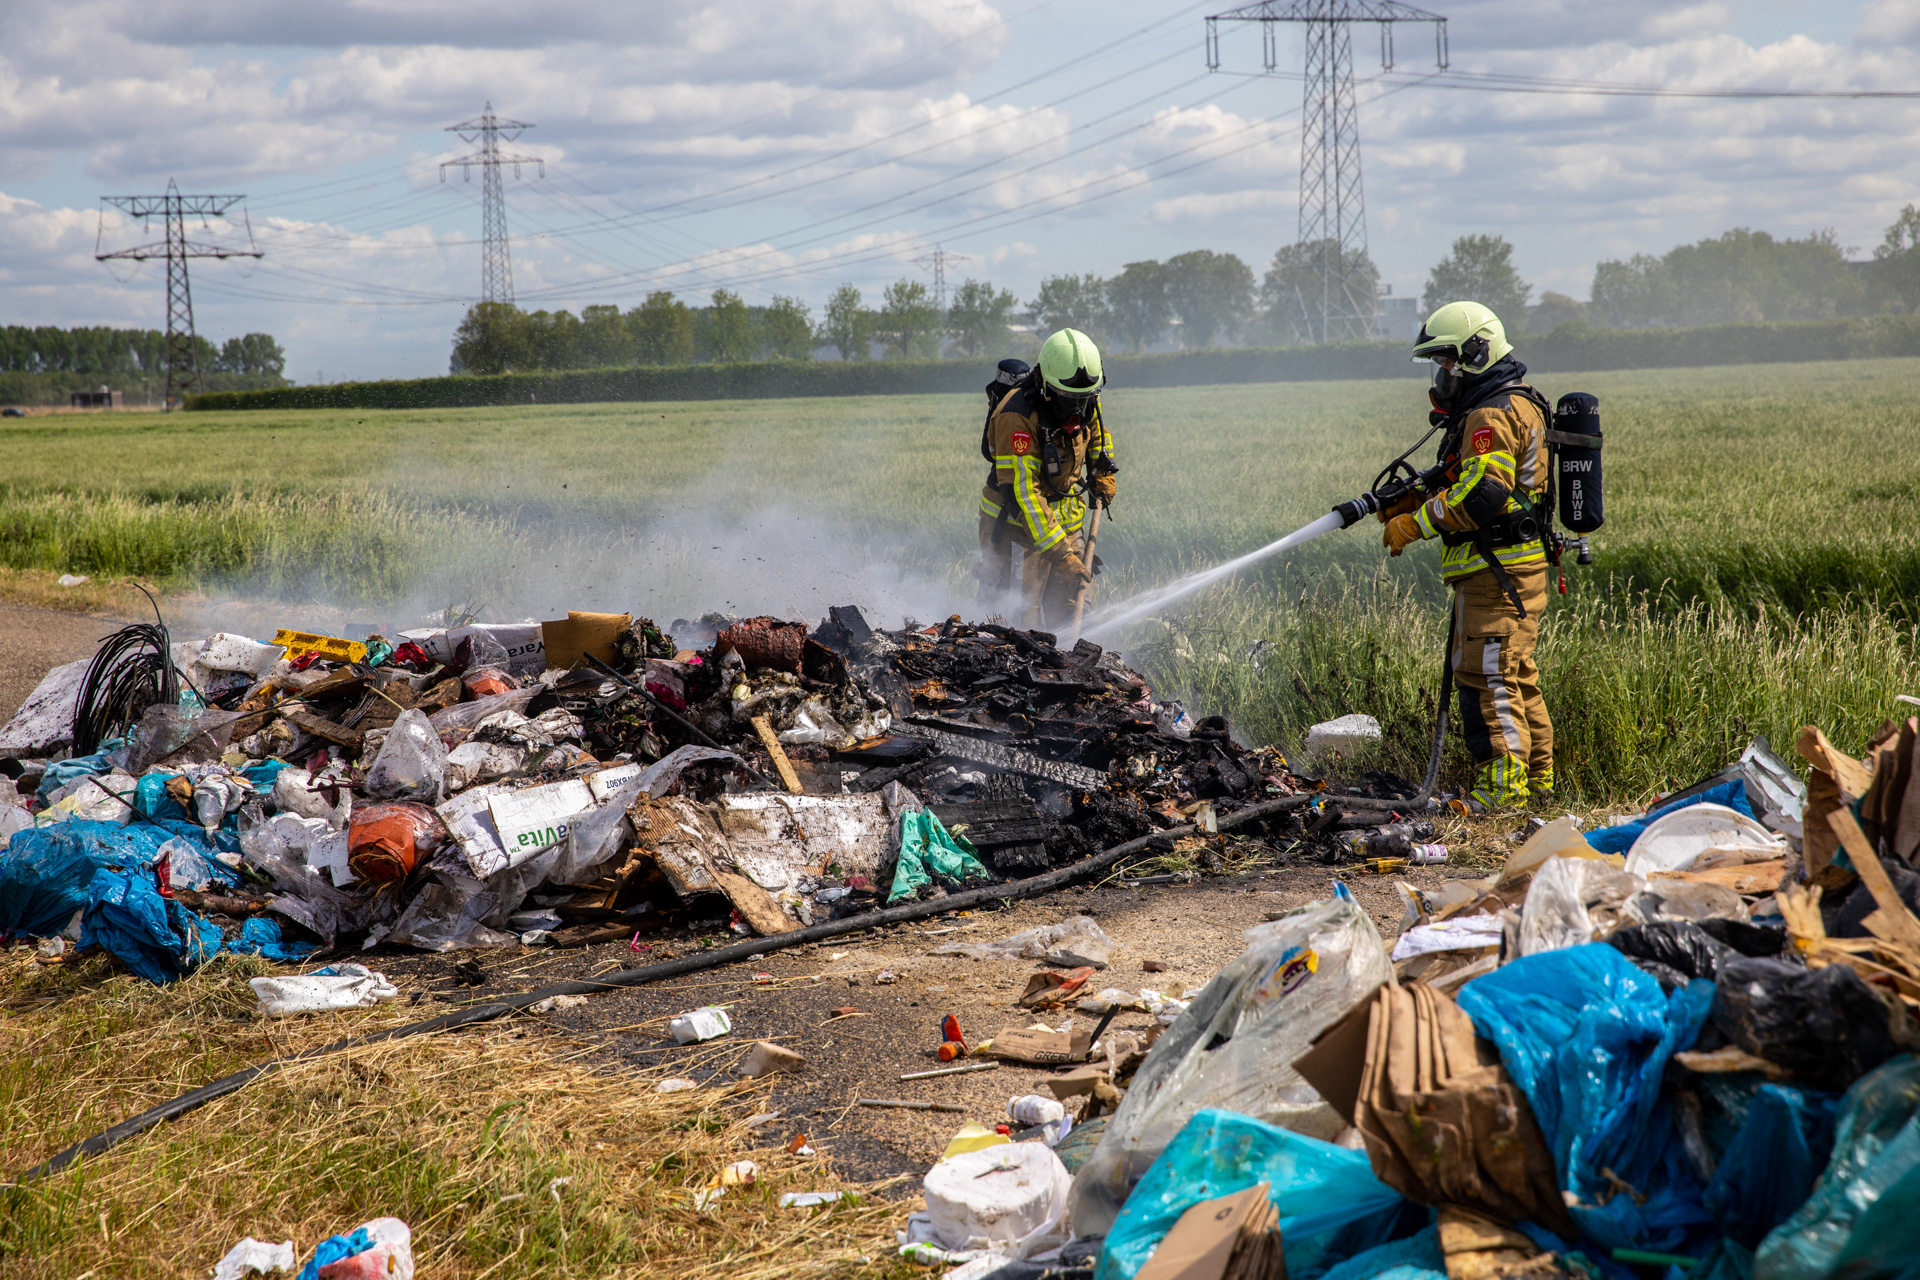 Afval in vuilniswagen vat vlam: lading gedumpt op straat